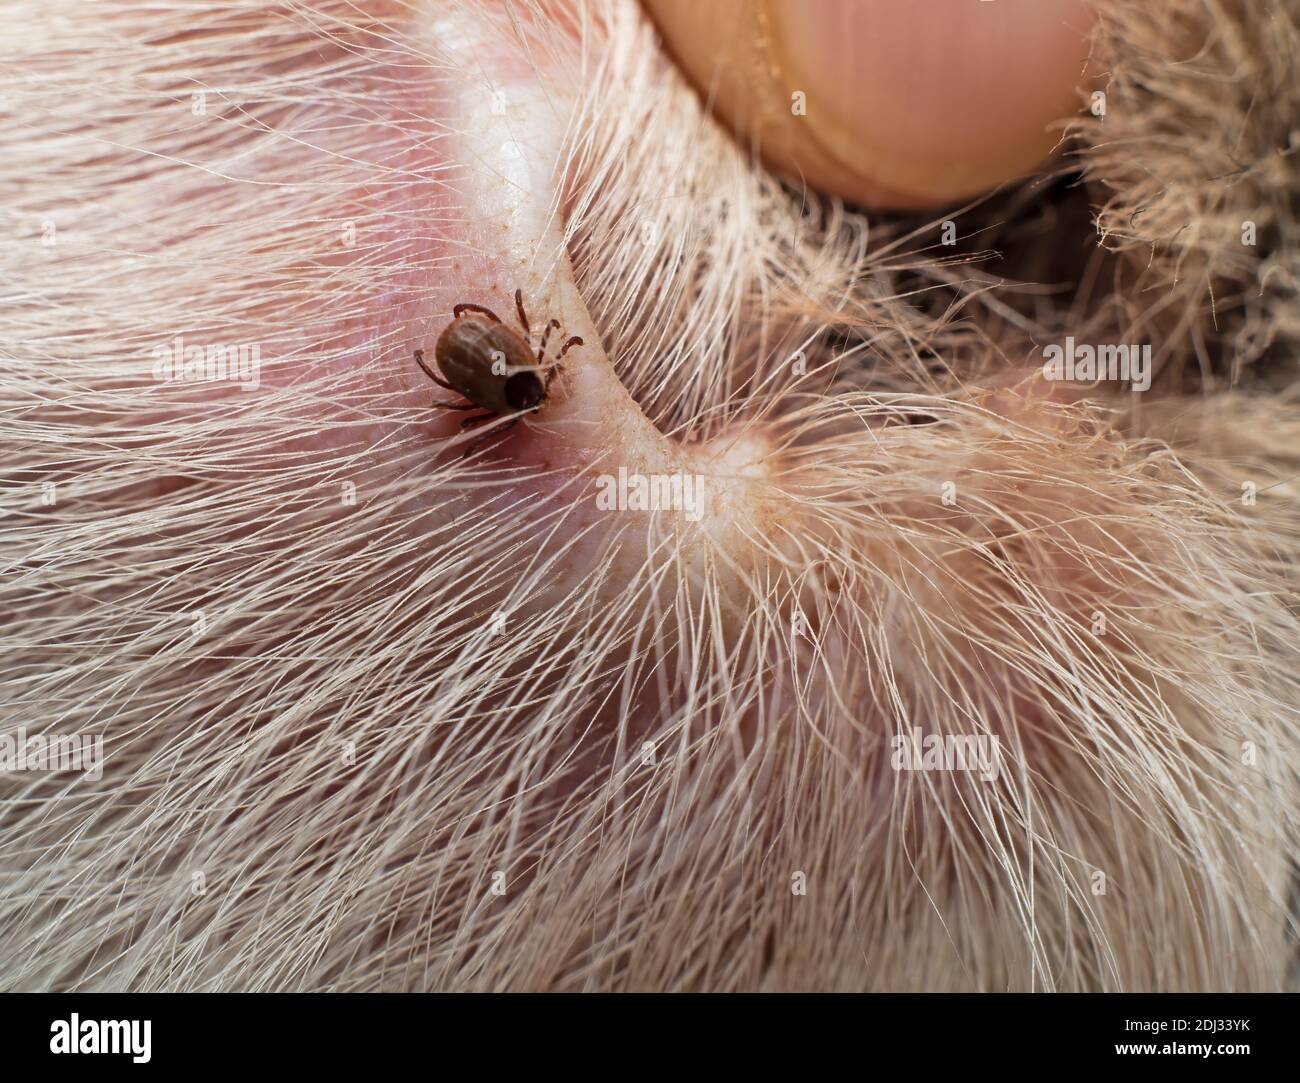 Gemeinsame Hund Zecke auf der Innenseite eines Hundes gefunden Ohr  Stockfotografie - Alamy